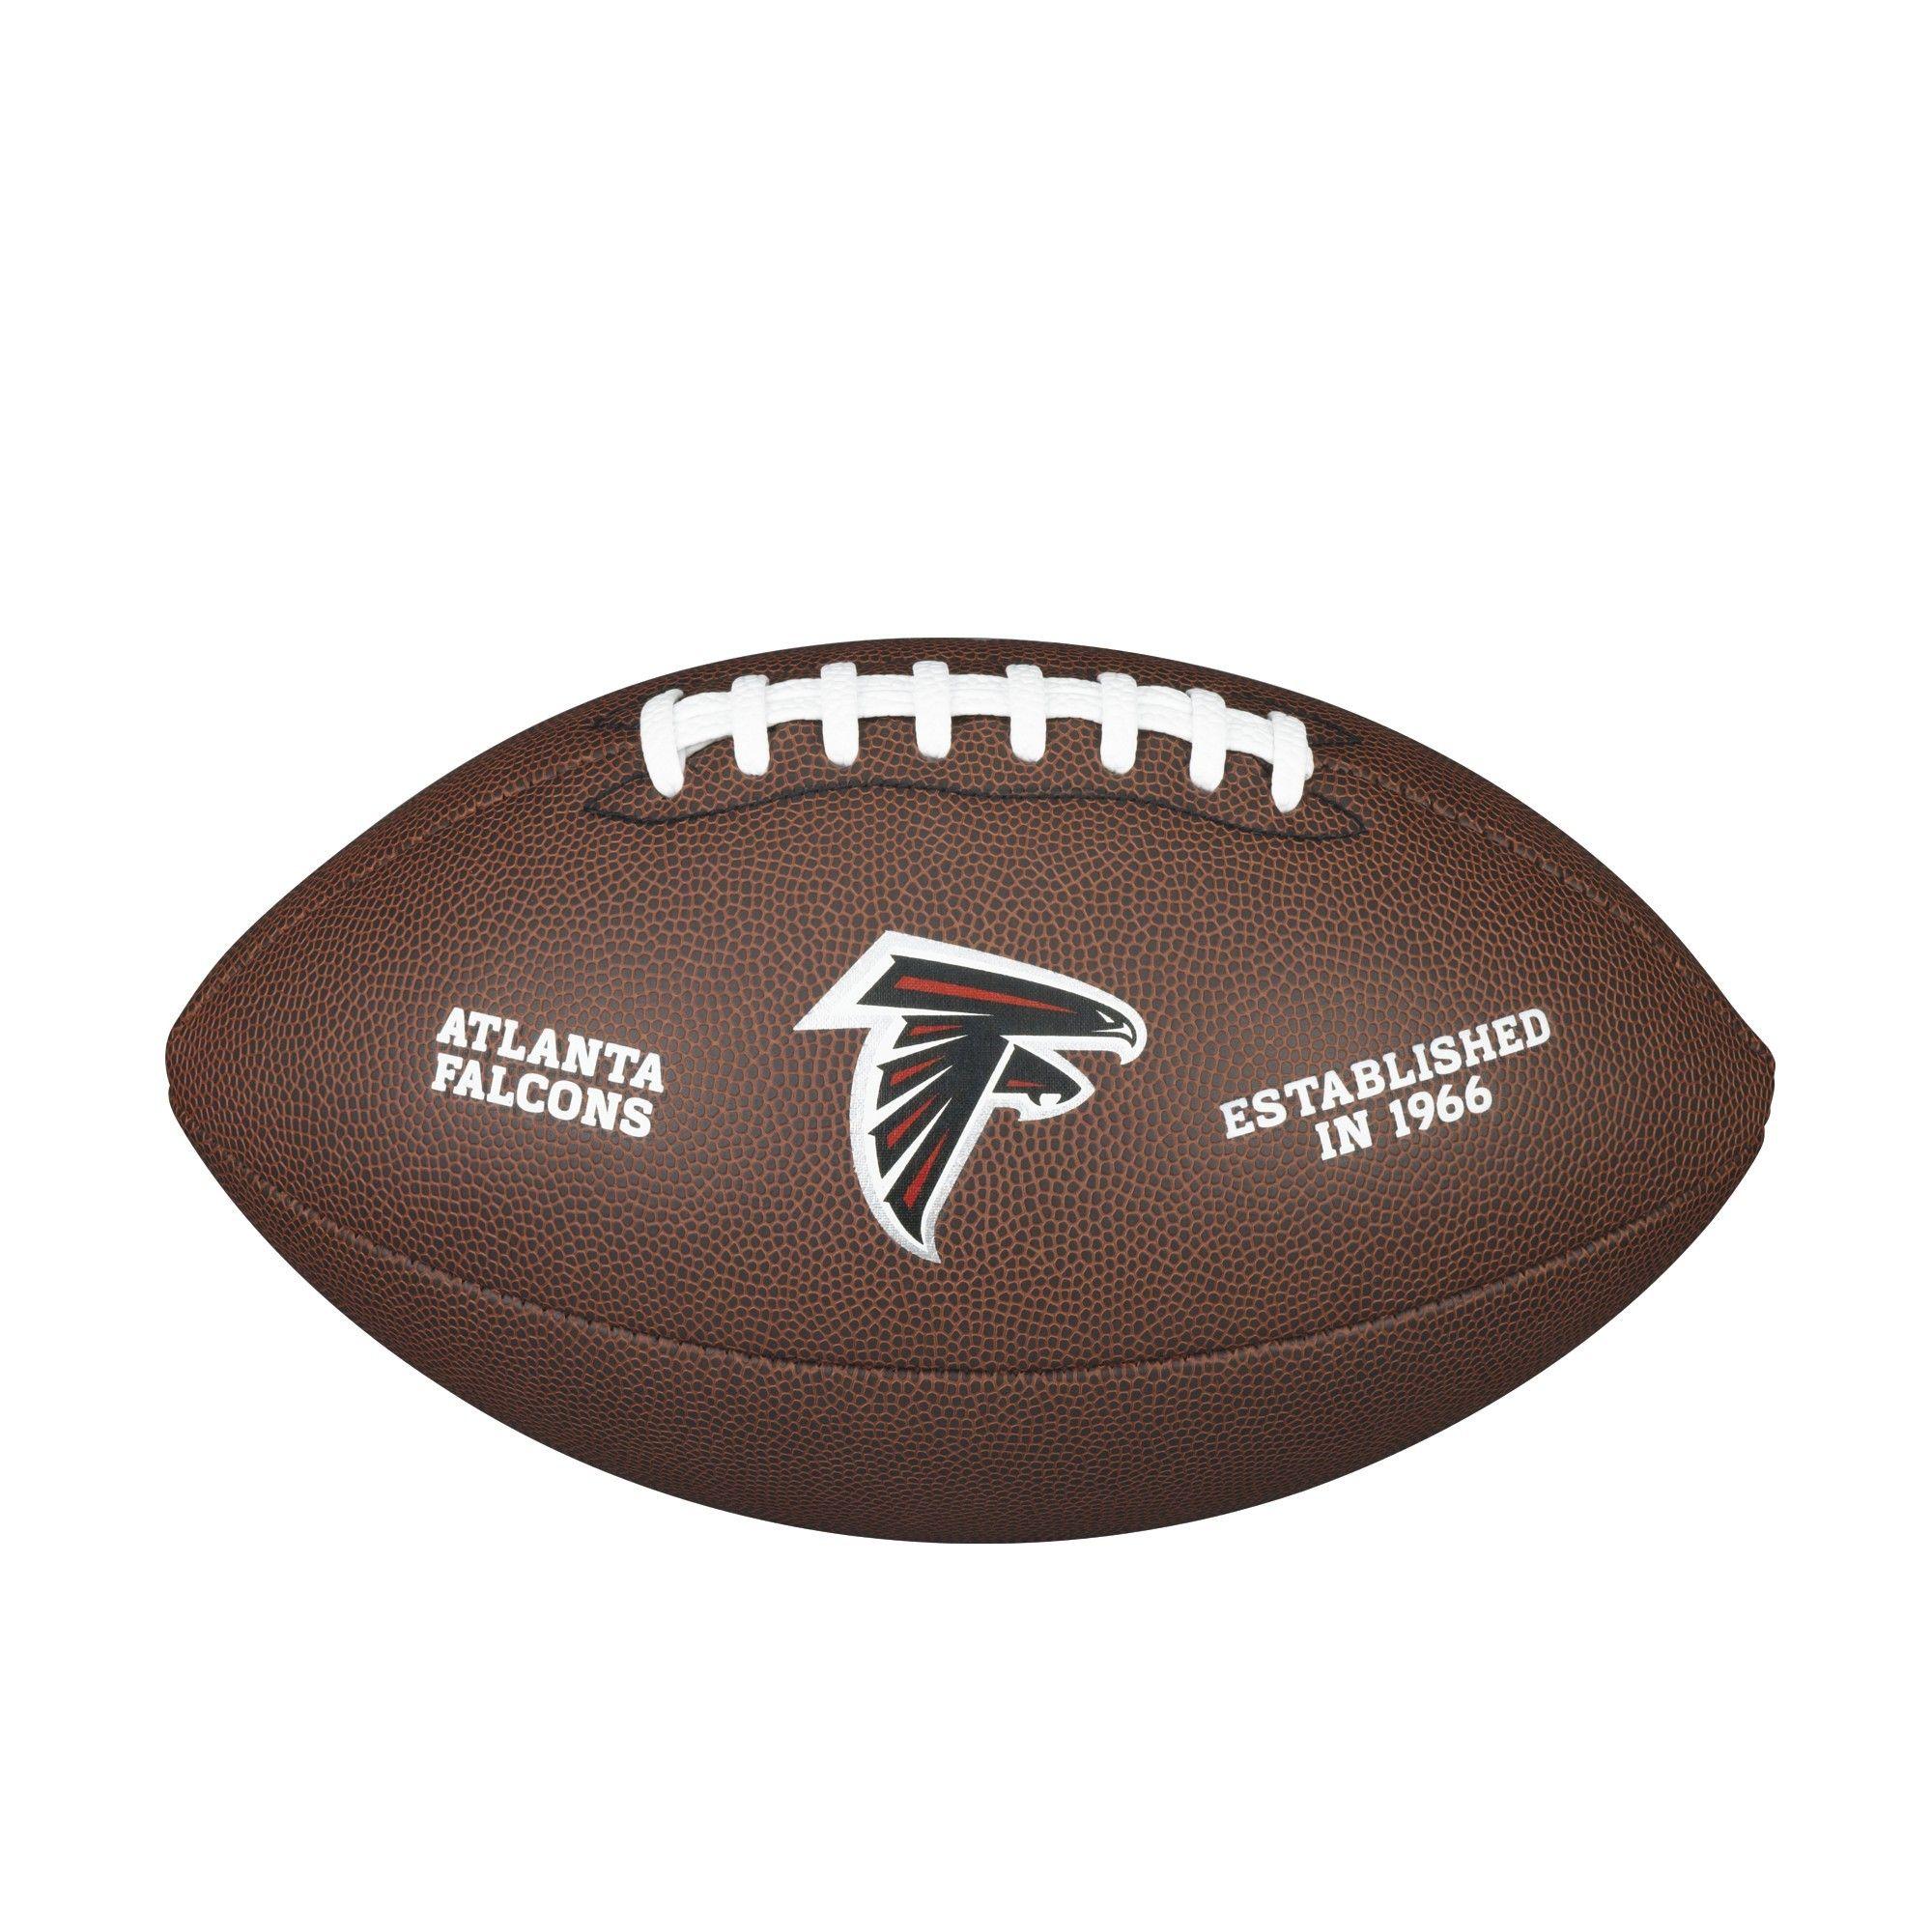 NFL Falcons Logo - NFL TEAM LOGO COMPOSITE FOOTBALL - OFFICIAL, ATLANTA FALCONS ...